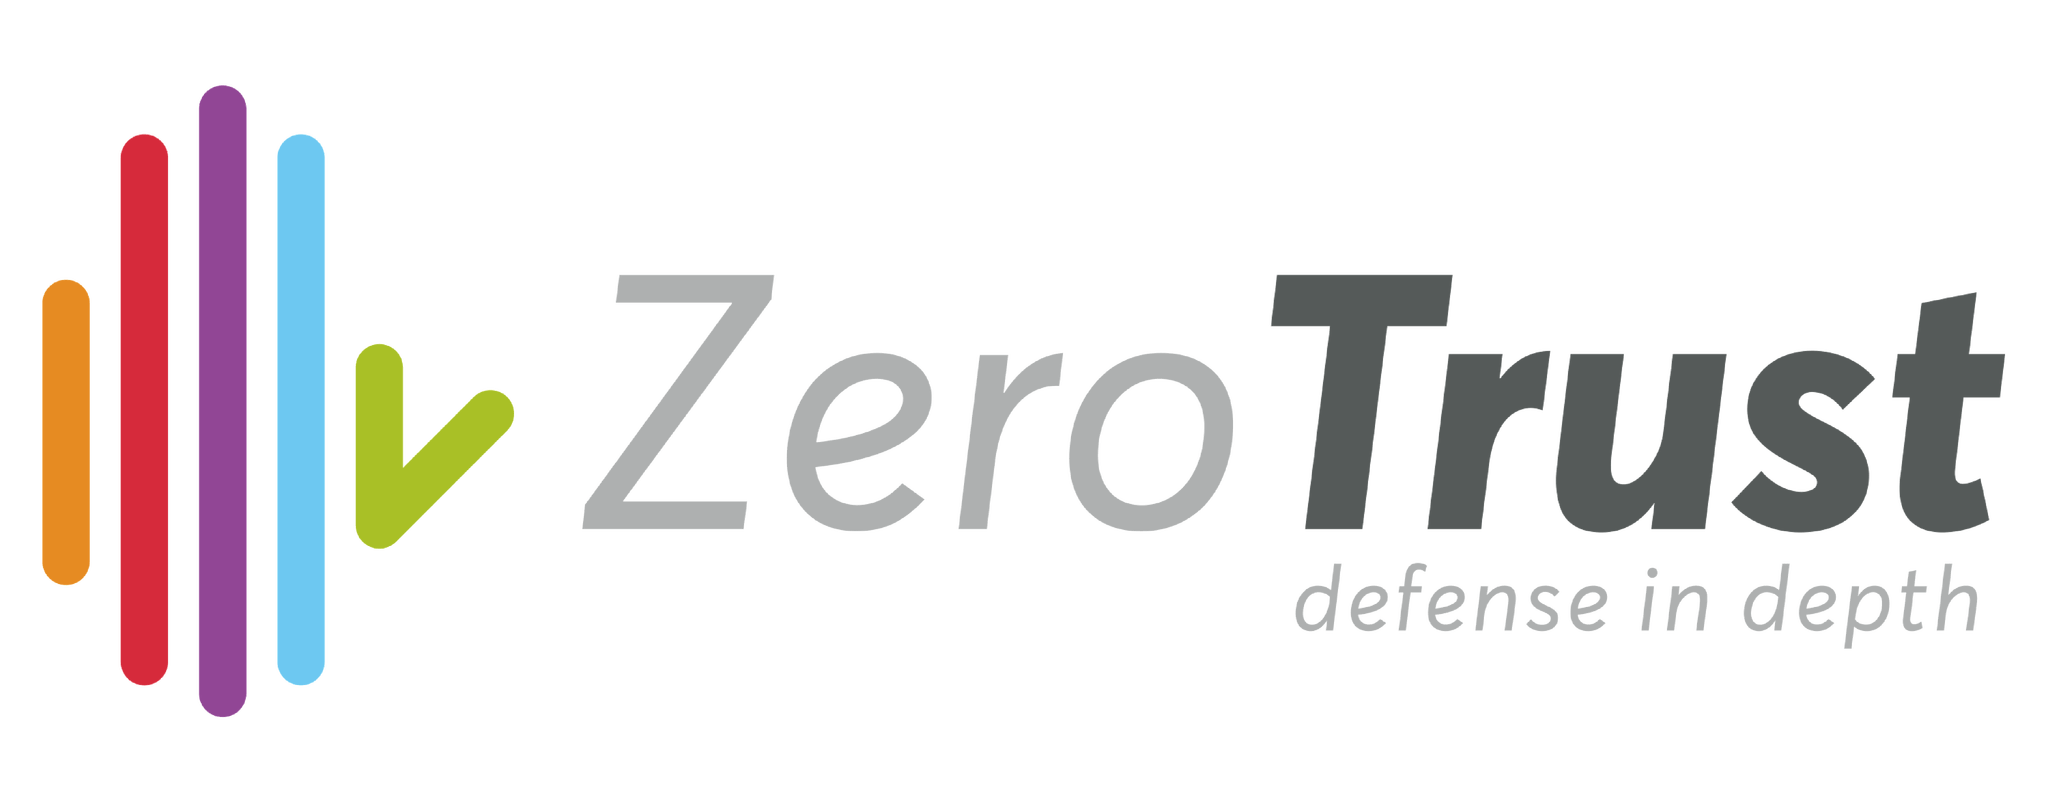 Pour un télétravail pérenne et serein, Zero Trust soutient les entreprises